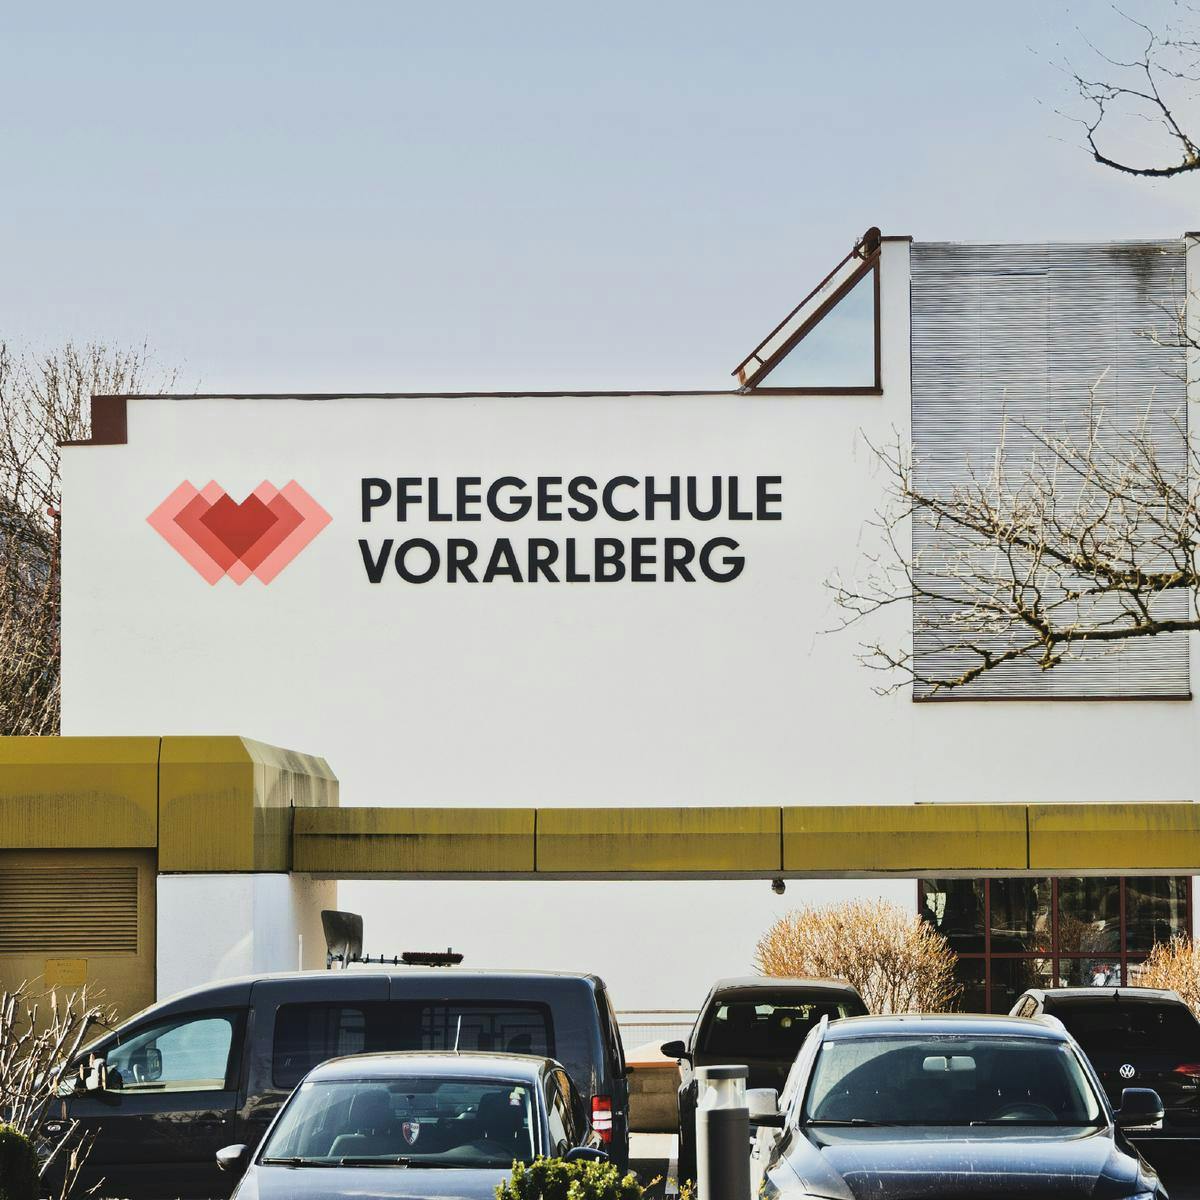 Pflegeschule Vorarlberg, Zeughaus Design © Patricia Keckeis